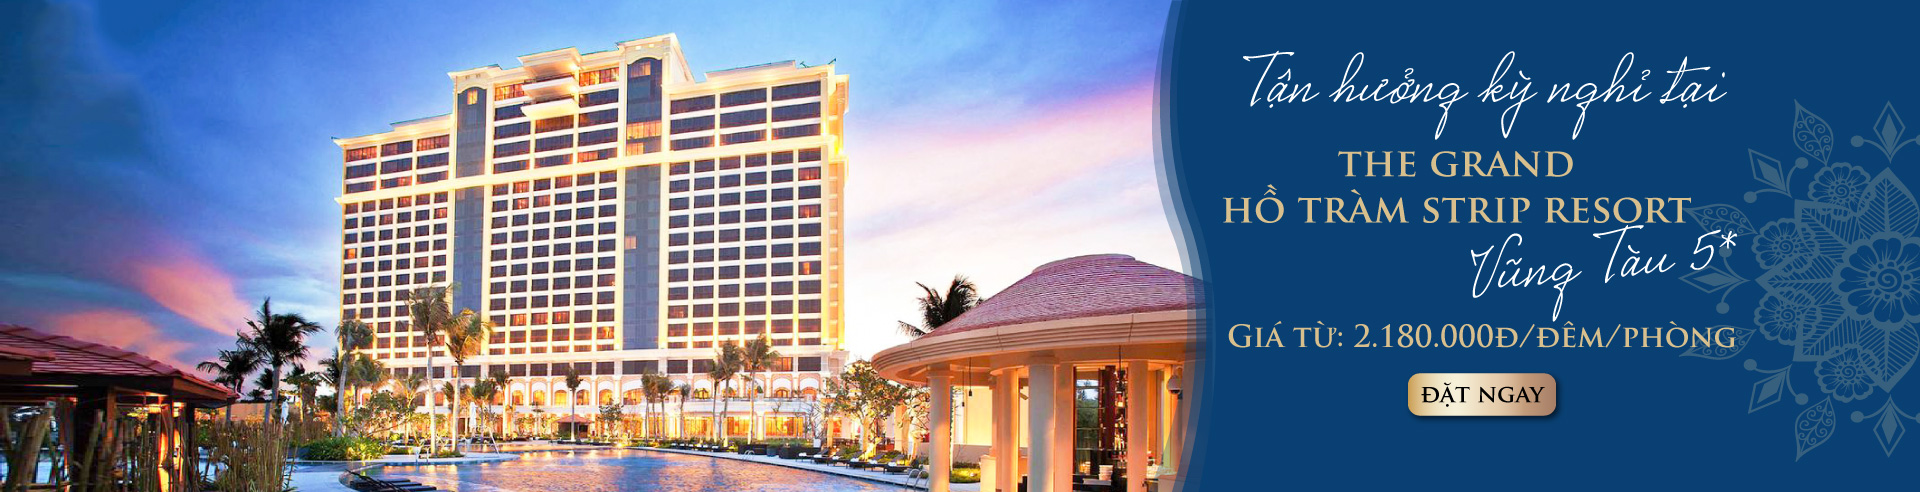 Hotel Destination: Grand Hồ Tràm Vũng Tàu 